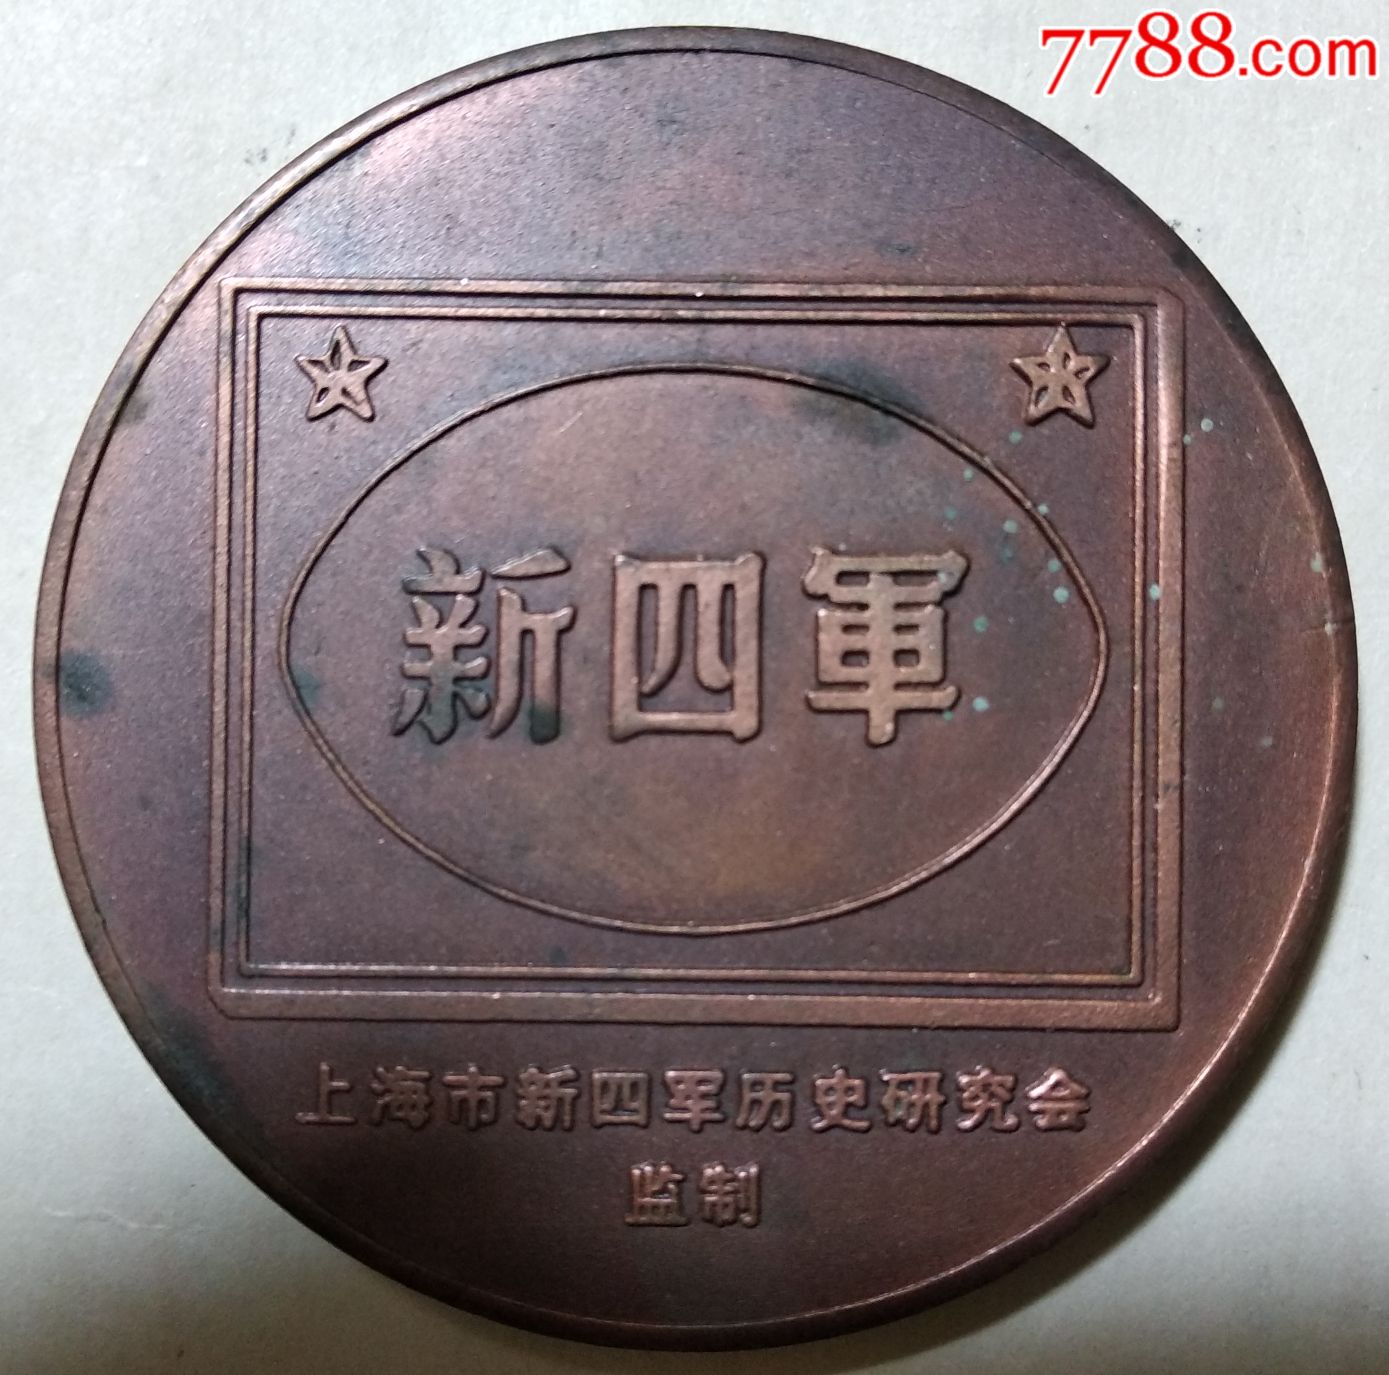 1997年,上海市新四军历史研究会监制纪念新四军成立60周年大铜章